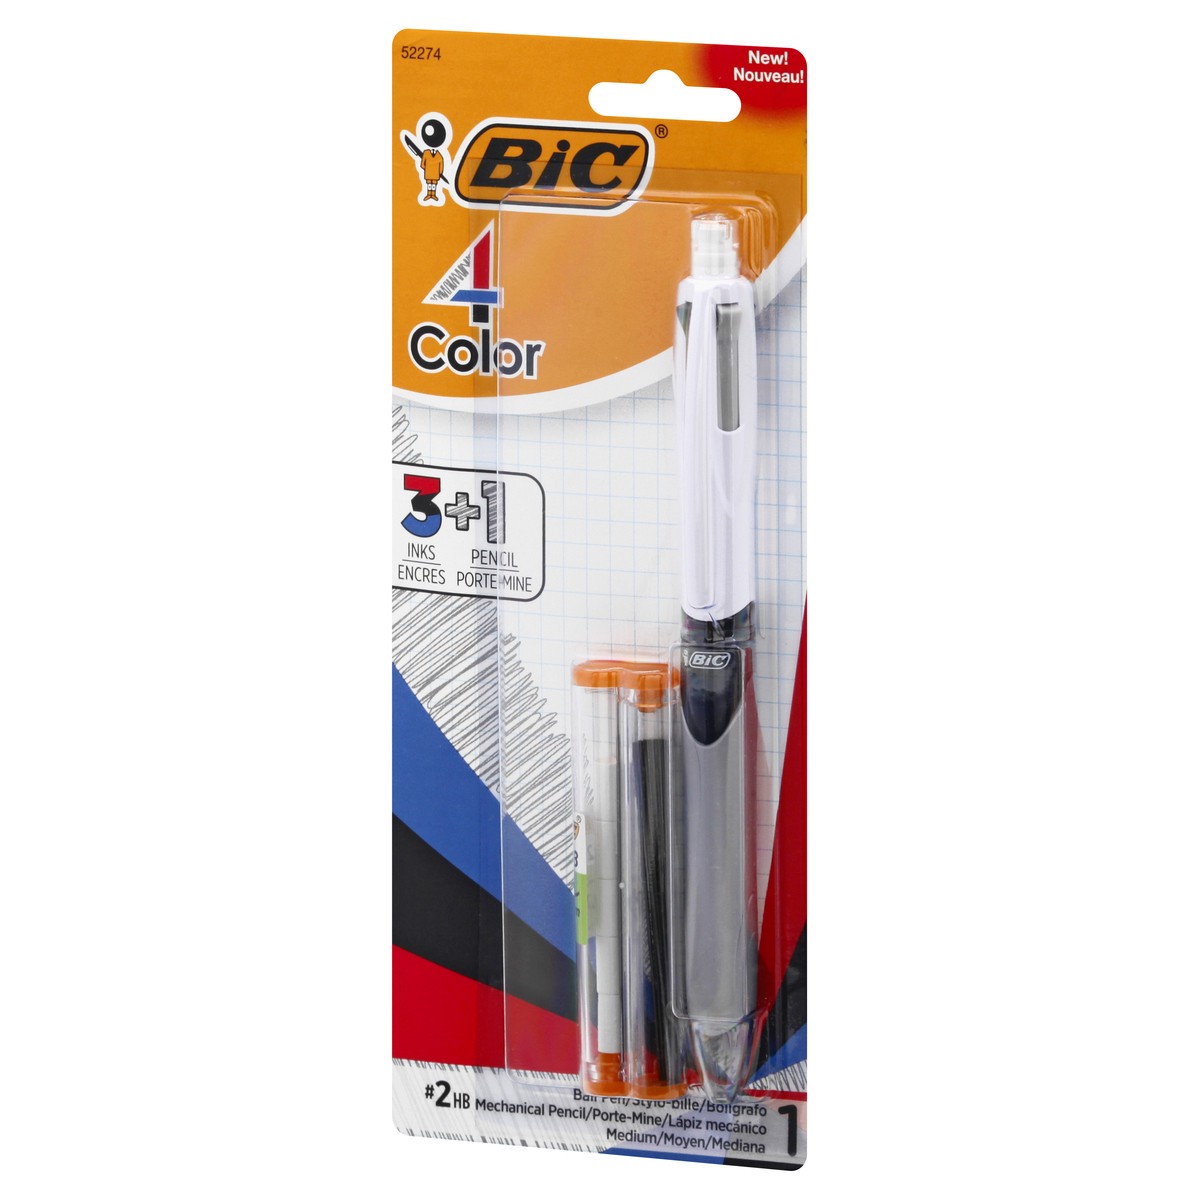 slide 3 of 11, BIC 4 Color Mechanical Pencil Medium No. 2 Ball Pen 1 ea, 1 ct